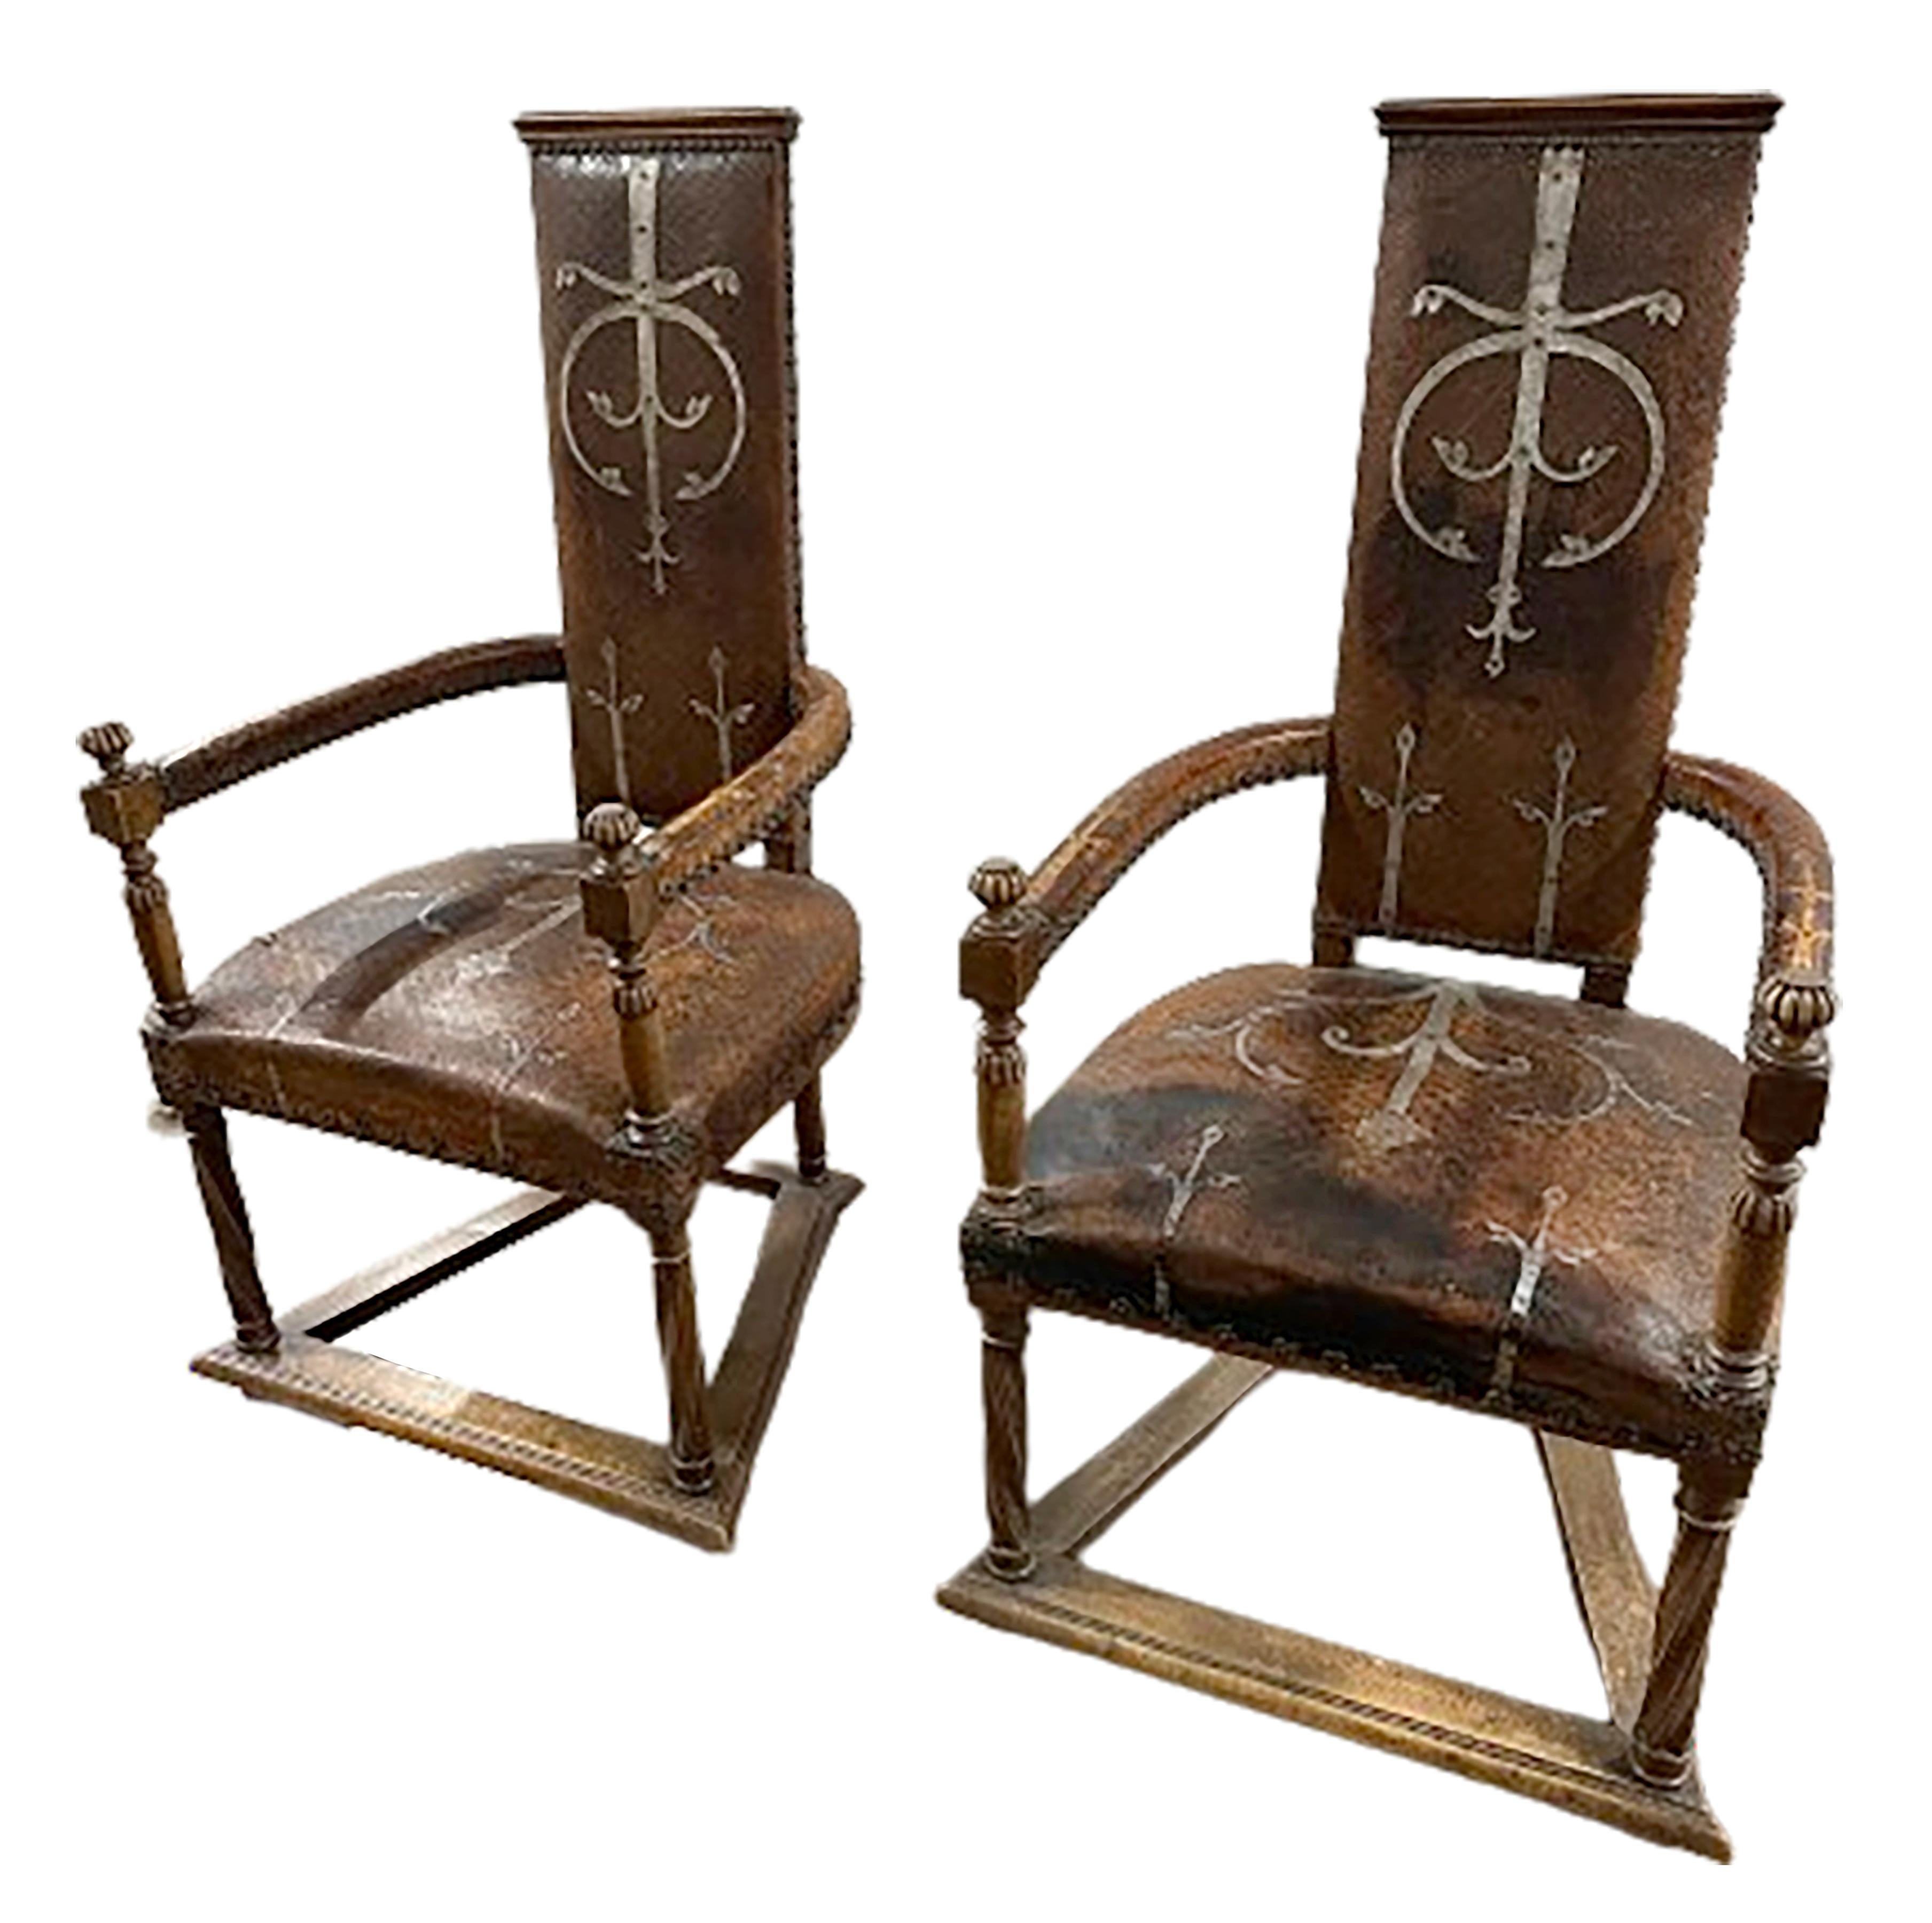 Ein exquisites Paar spanischer Sessel aus genietetem Leder aus der Mitte des 19. Mit hohen, schlanken Rückenlehnen, die mit subtilen Bögen gekrönt sind, und großen, nach außen schwingenden Armlehnen ist jeder Stuhl mit einem schokoladenfarbenen